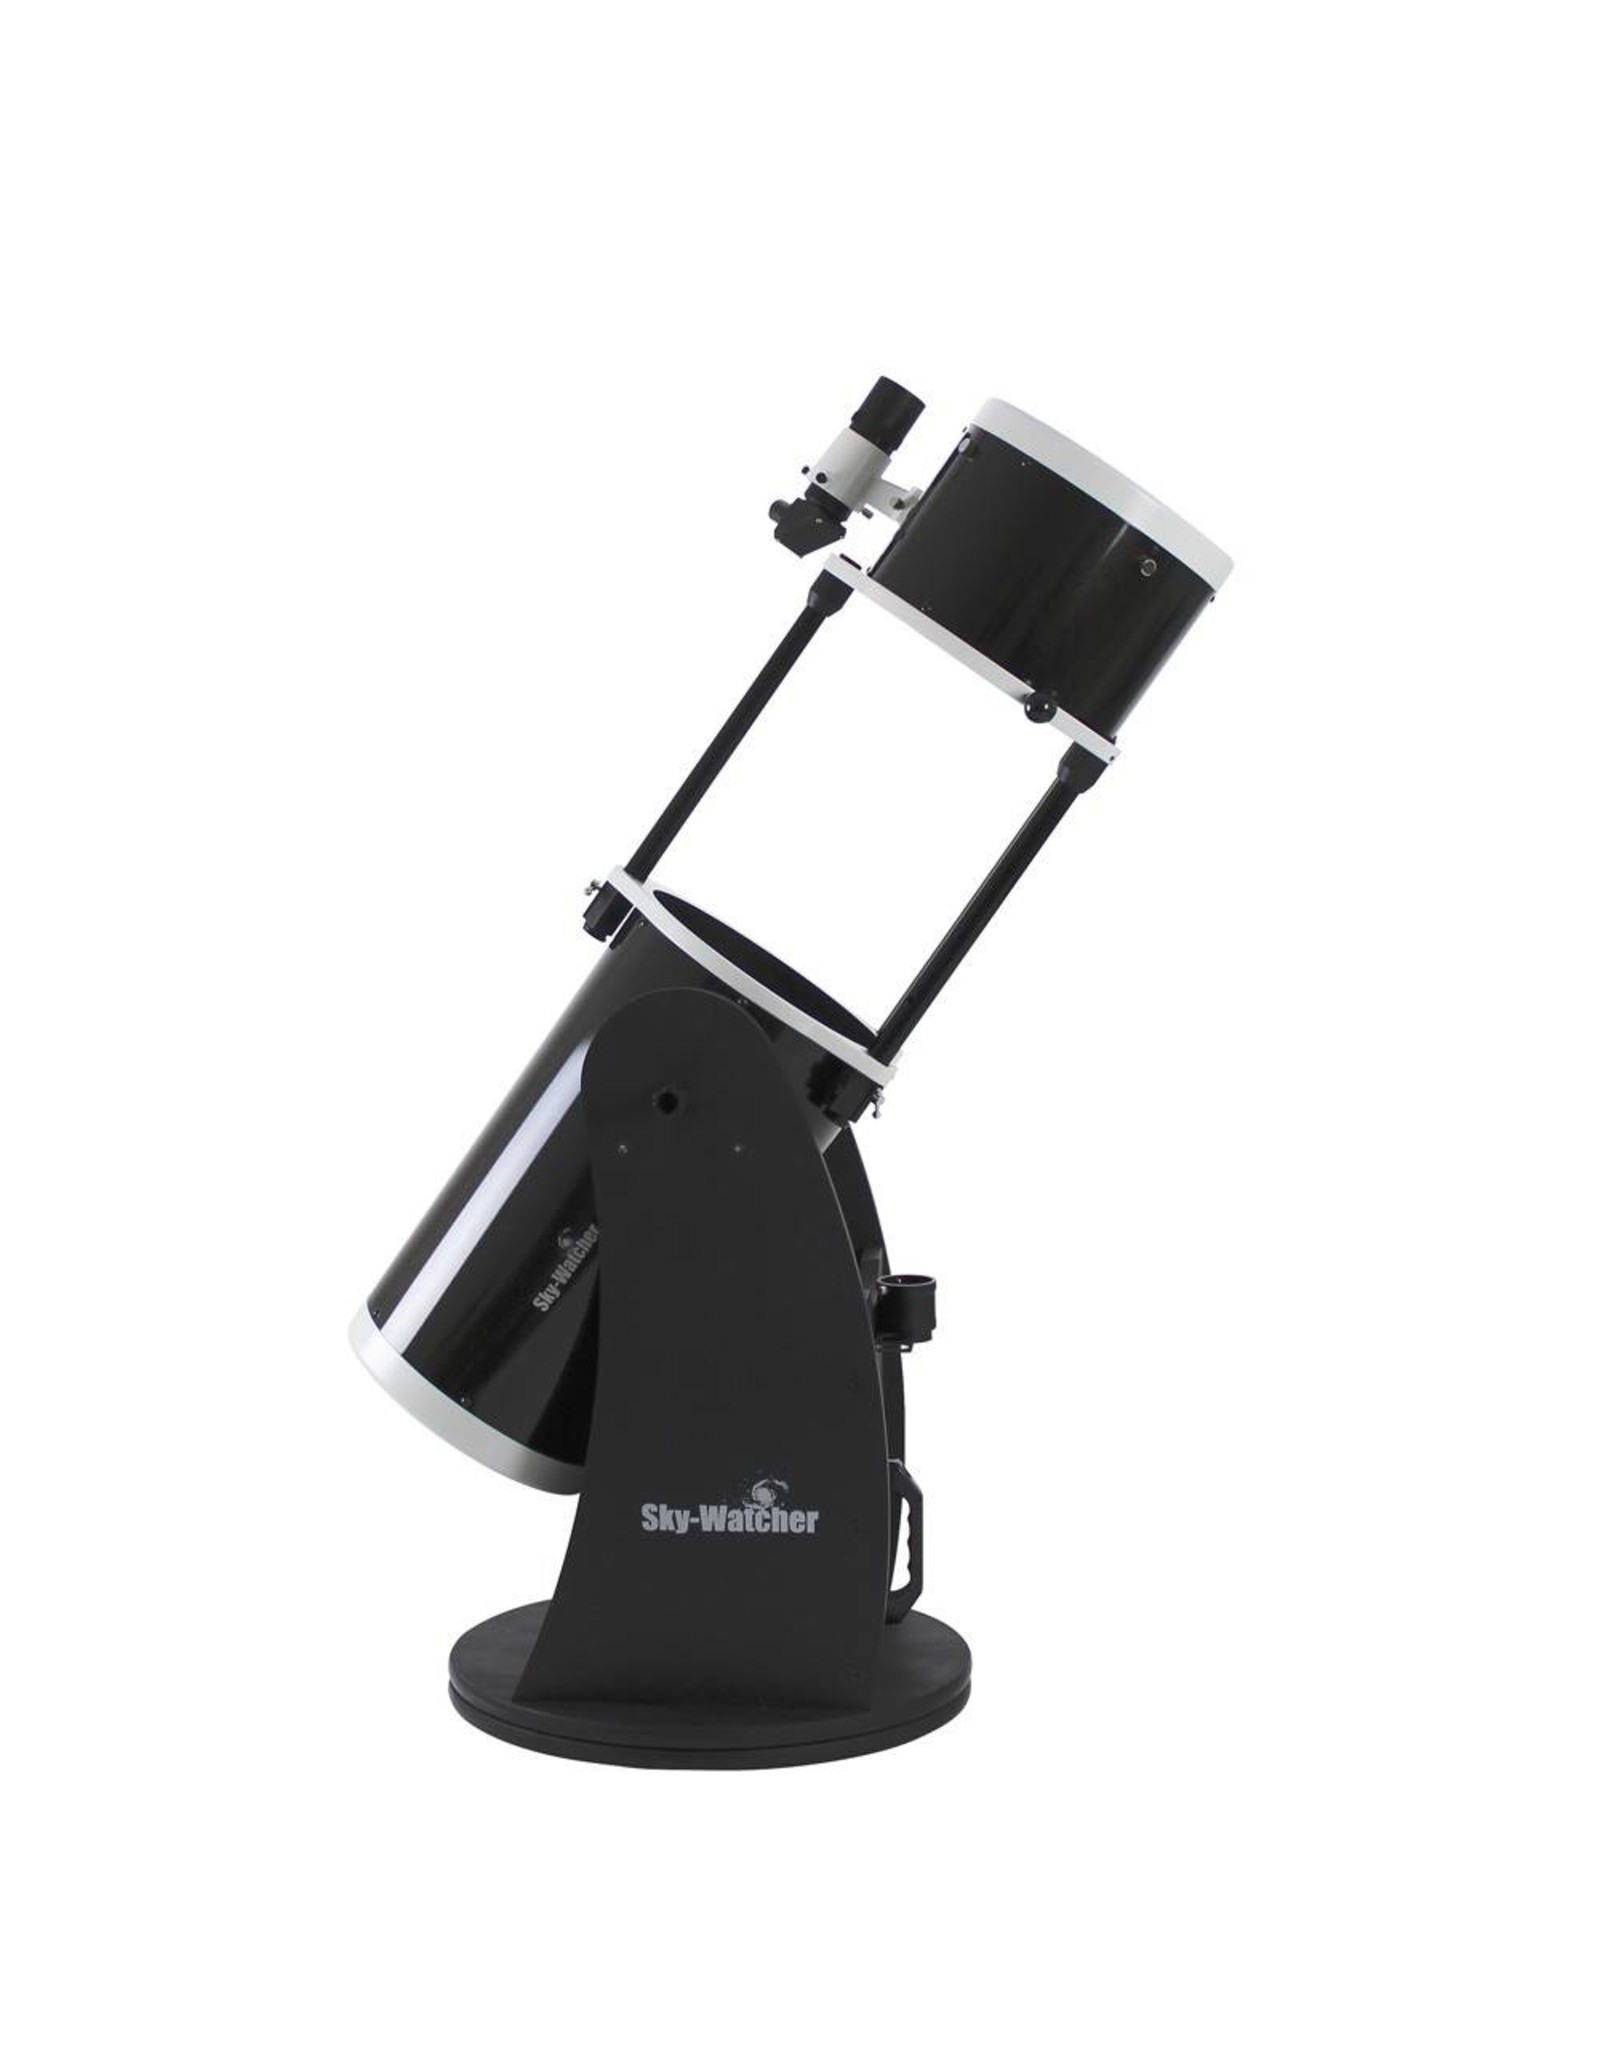 Sky-Watcher Sky-Watcher Flextube 250P Collapsible Dobsonian 10" (254 mm)